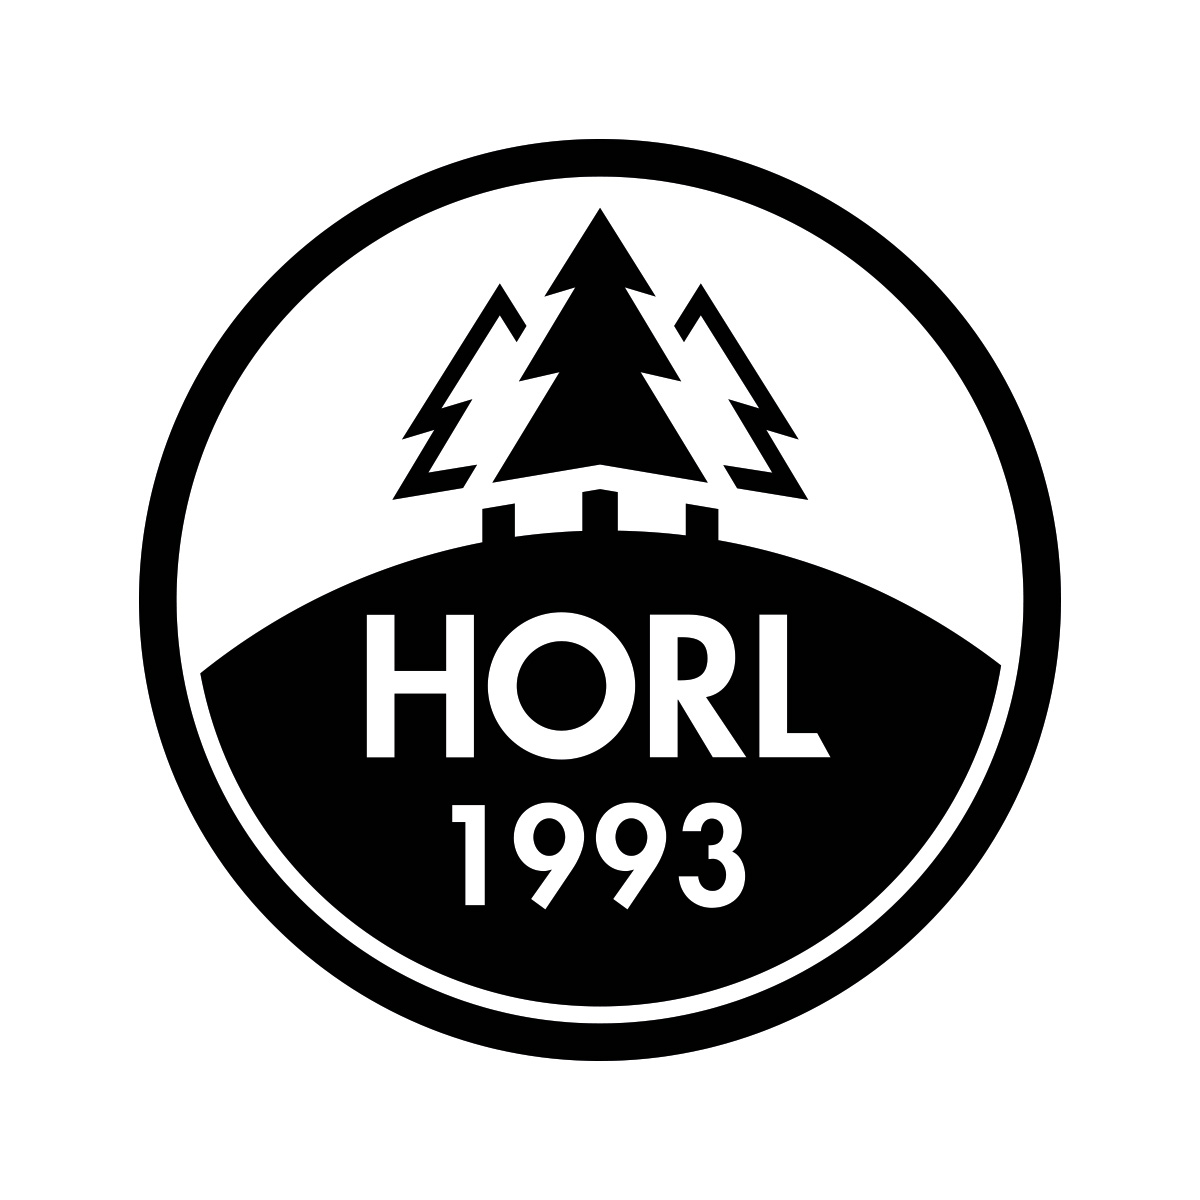 HORL 1993 GmbH